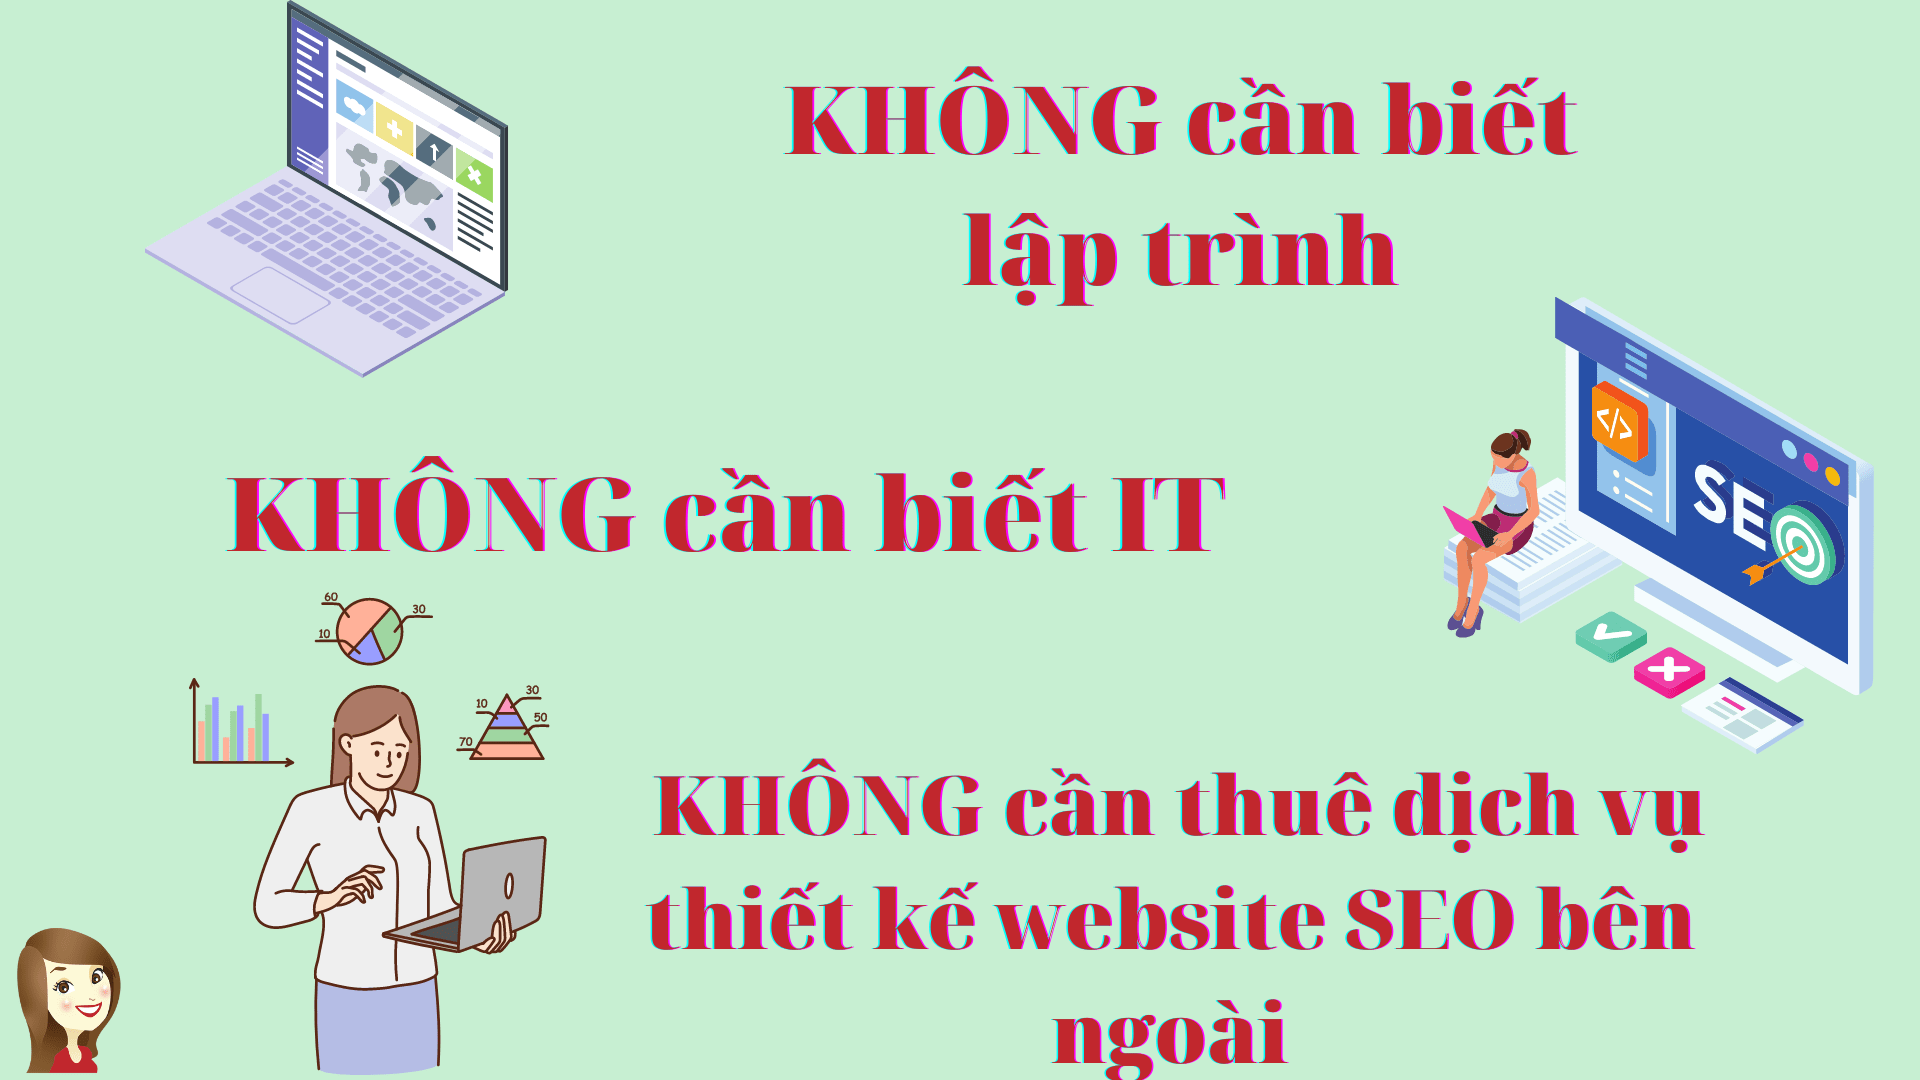 huong-dan-thiet-ke-website-chuan-SEO-bang-wordpress-trong-9-tieng-2-min